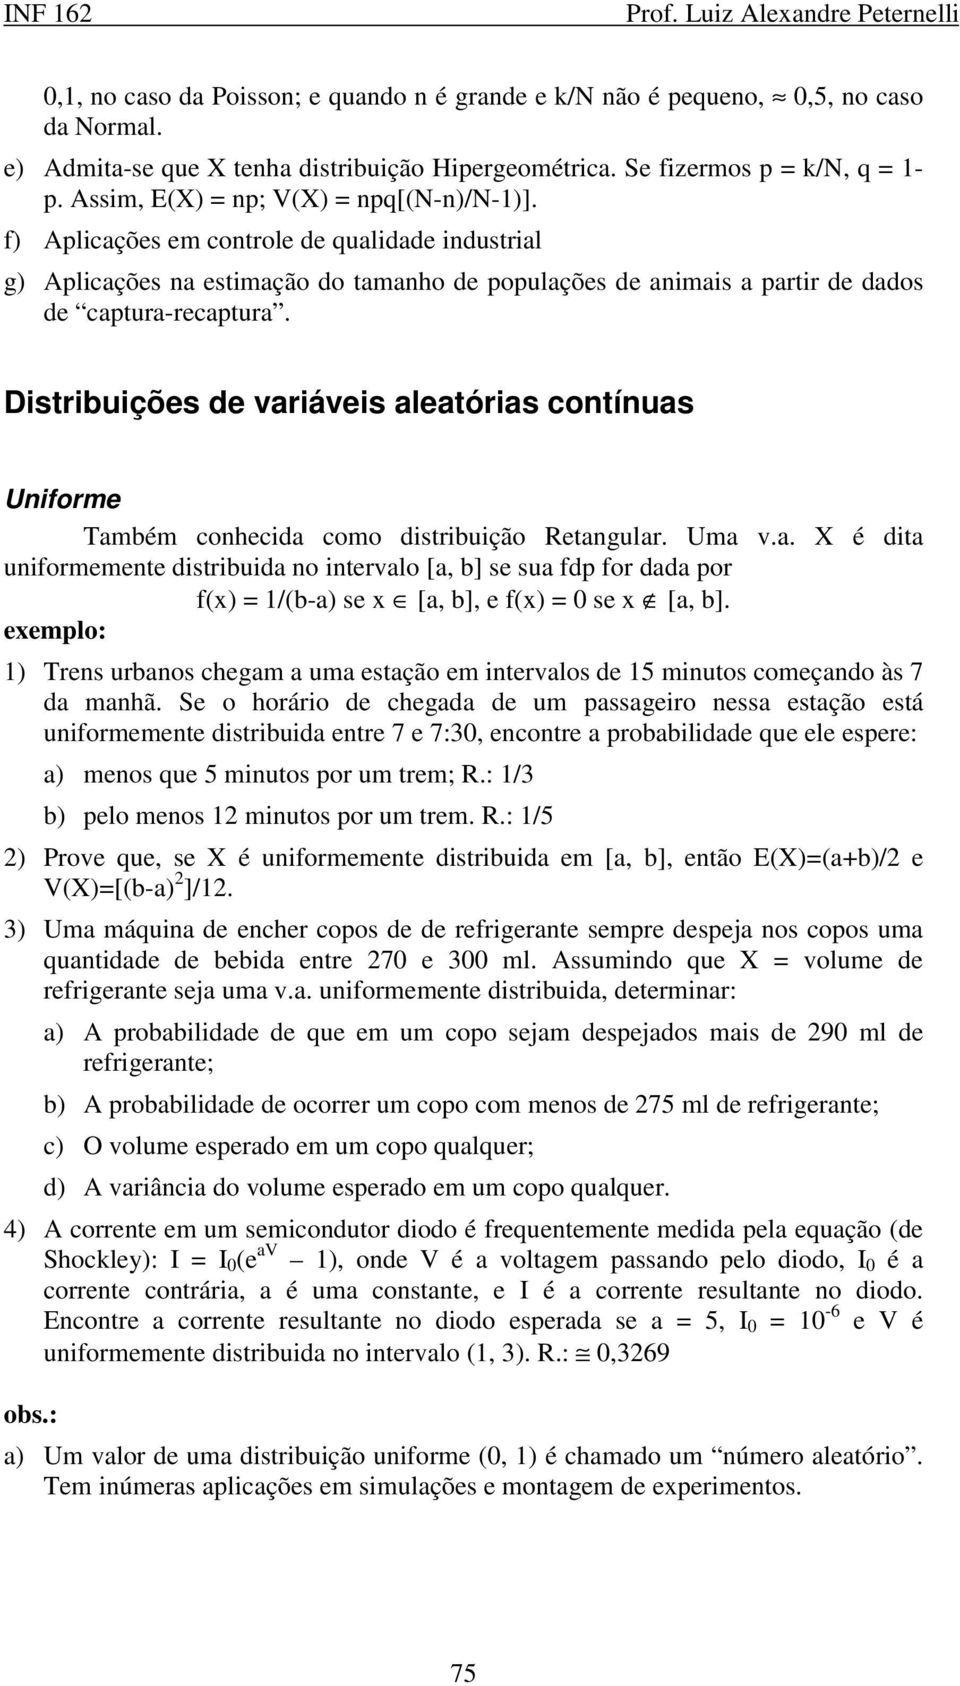 Distribuições de variáveis aleatórias contínuas Uniforme Também conhecida como distribuição Retangular. Uma v.a. X é dita uniformemente distribuida no intervalo [a, b] se sua fdp for dada por f() = /(b-a) se [a, b], e f() = 0 se [a, b].